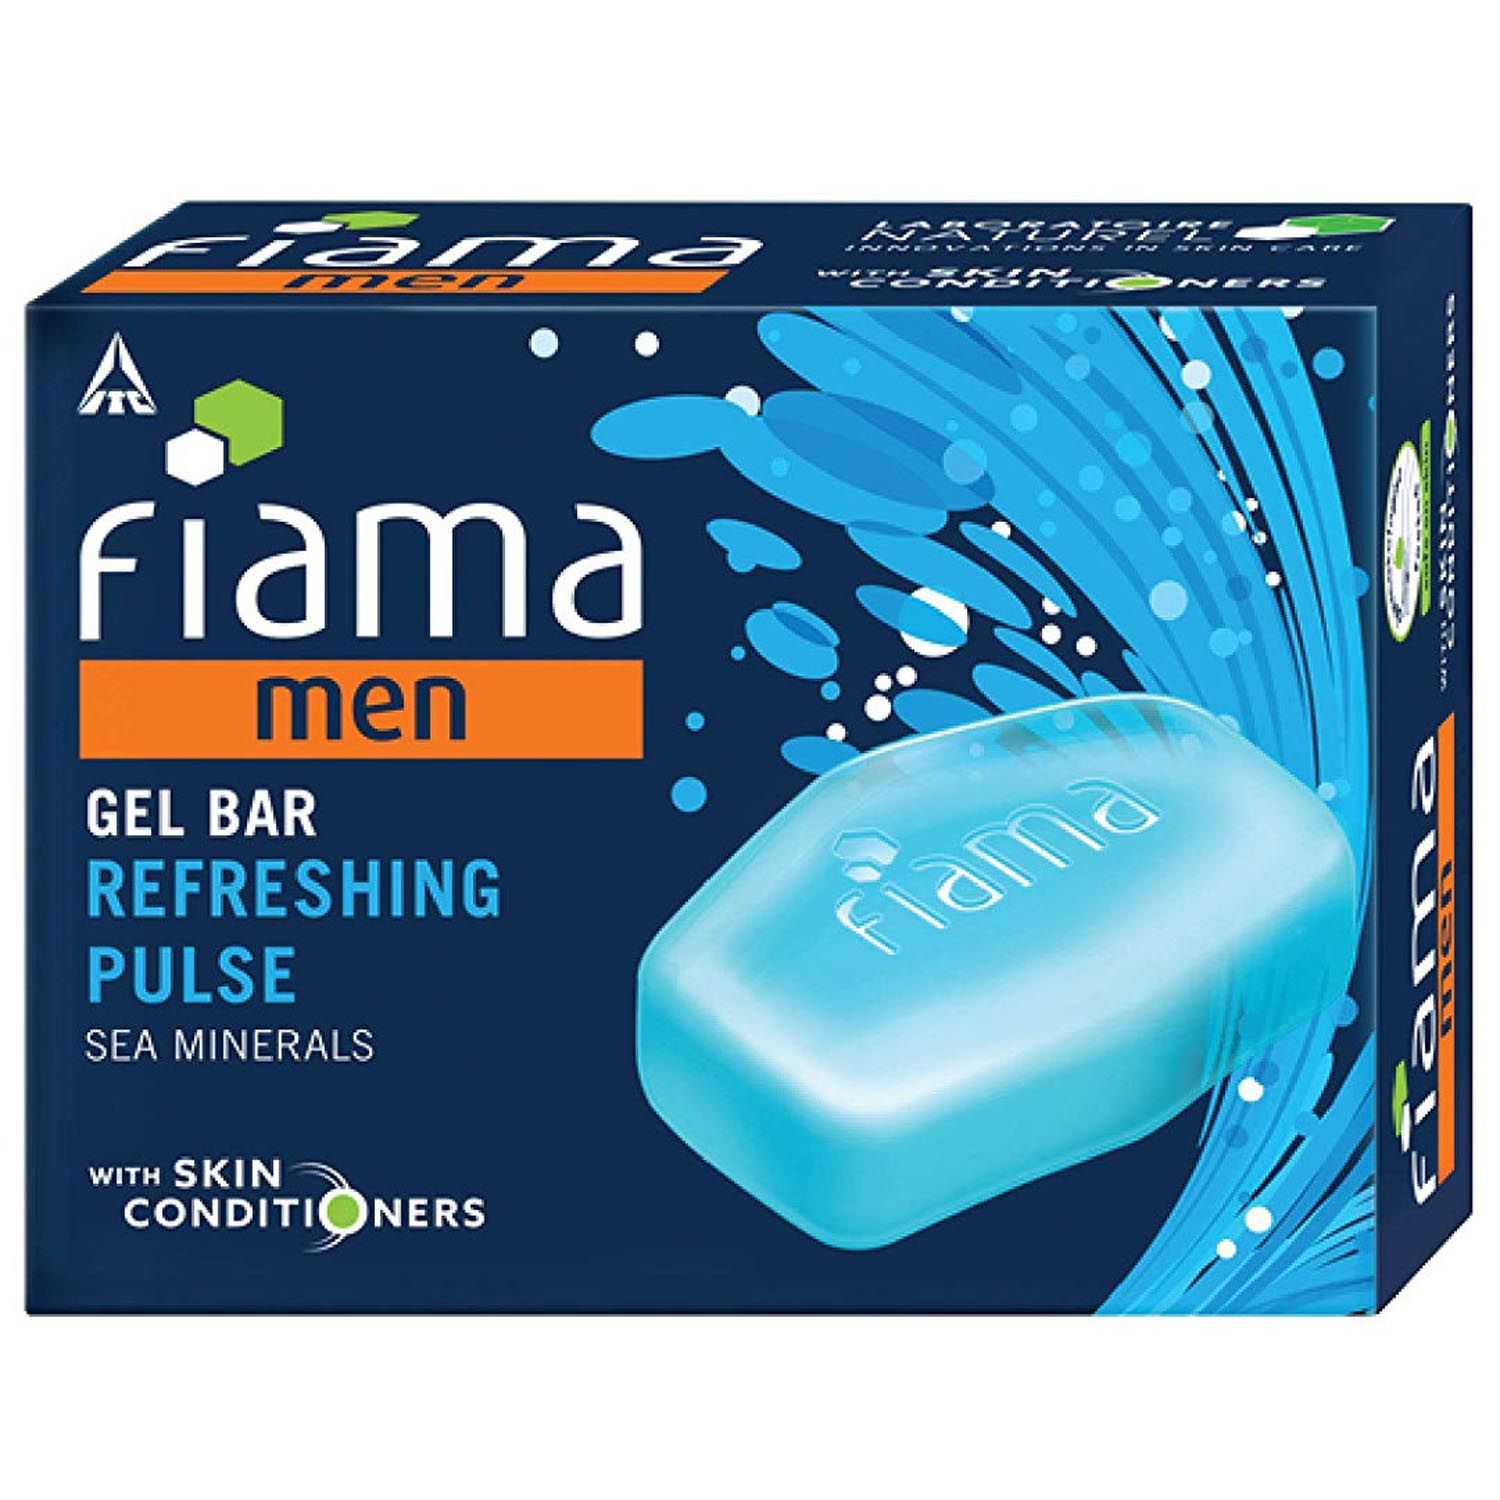 Fiama Di Wills Refreshing Pulse Gel Bar, 125 gm, Pack of 1 